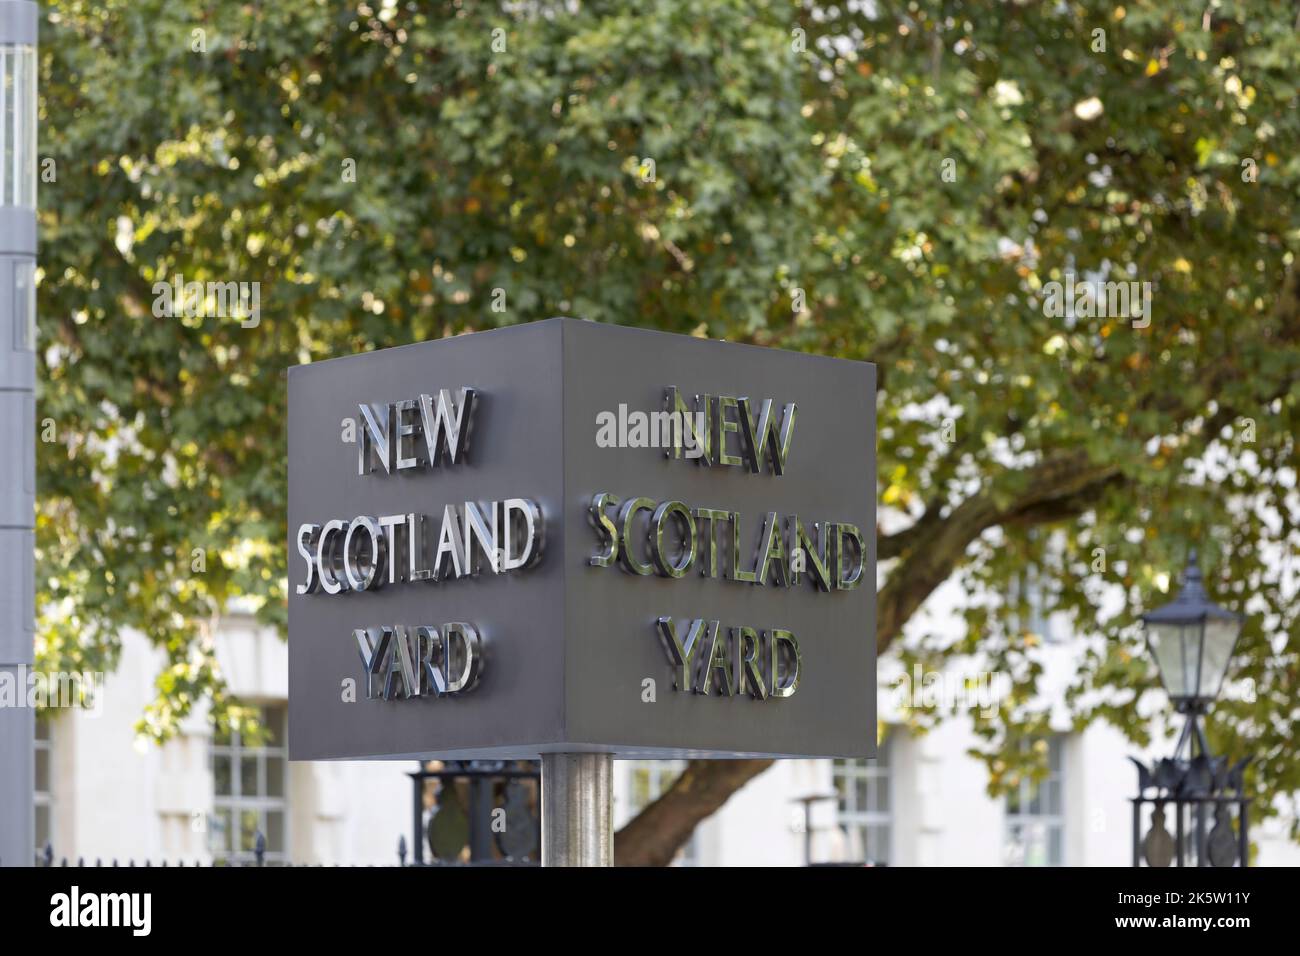 New Scotland Yard, London, UK Stock Photo